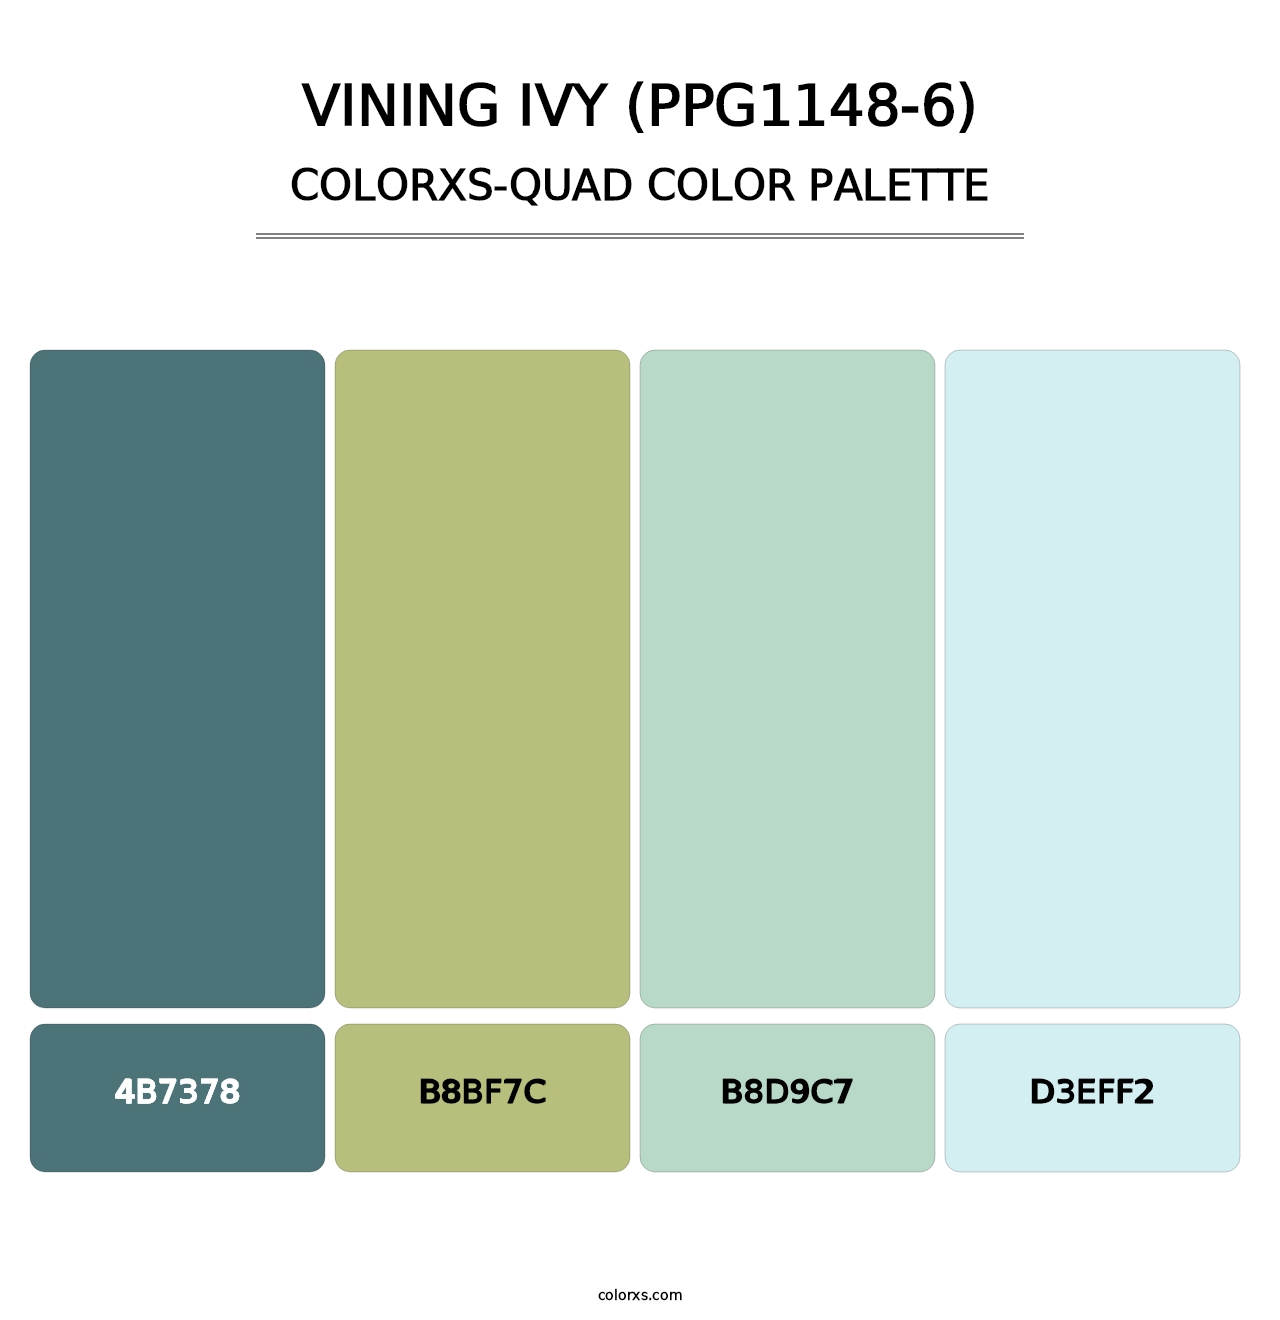 Vining Ivy (PPG1148-6) - Colorxs Quad Palette